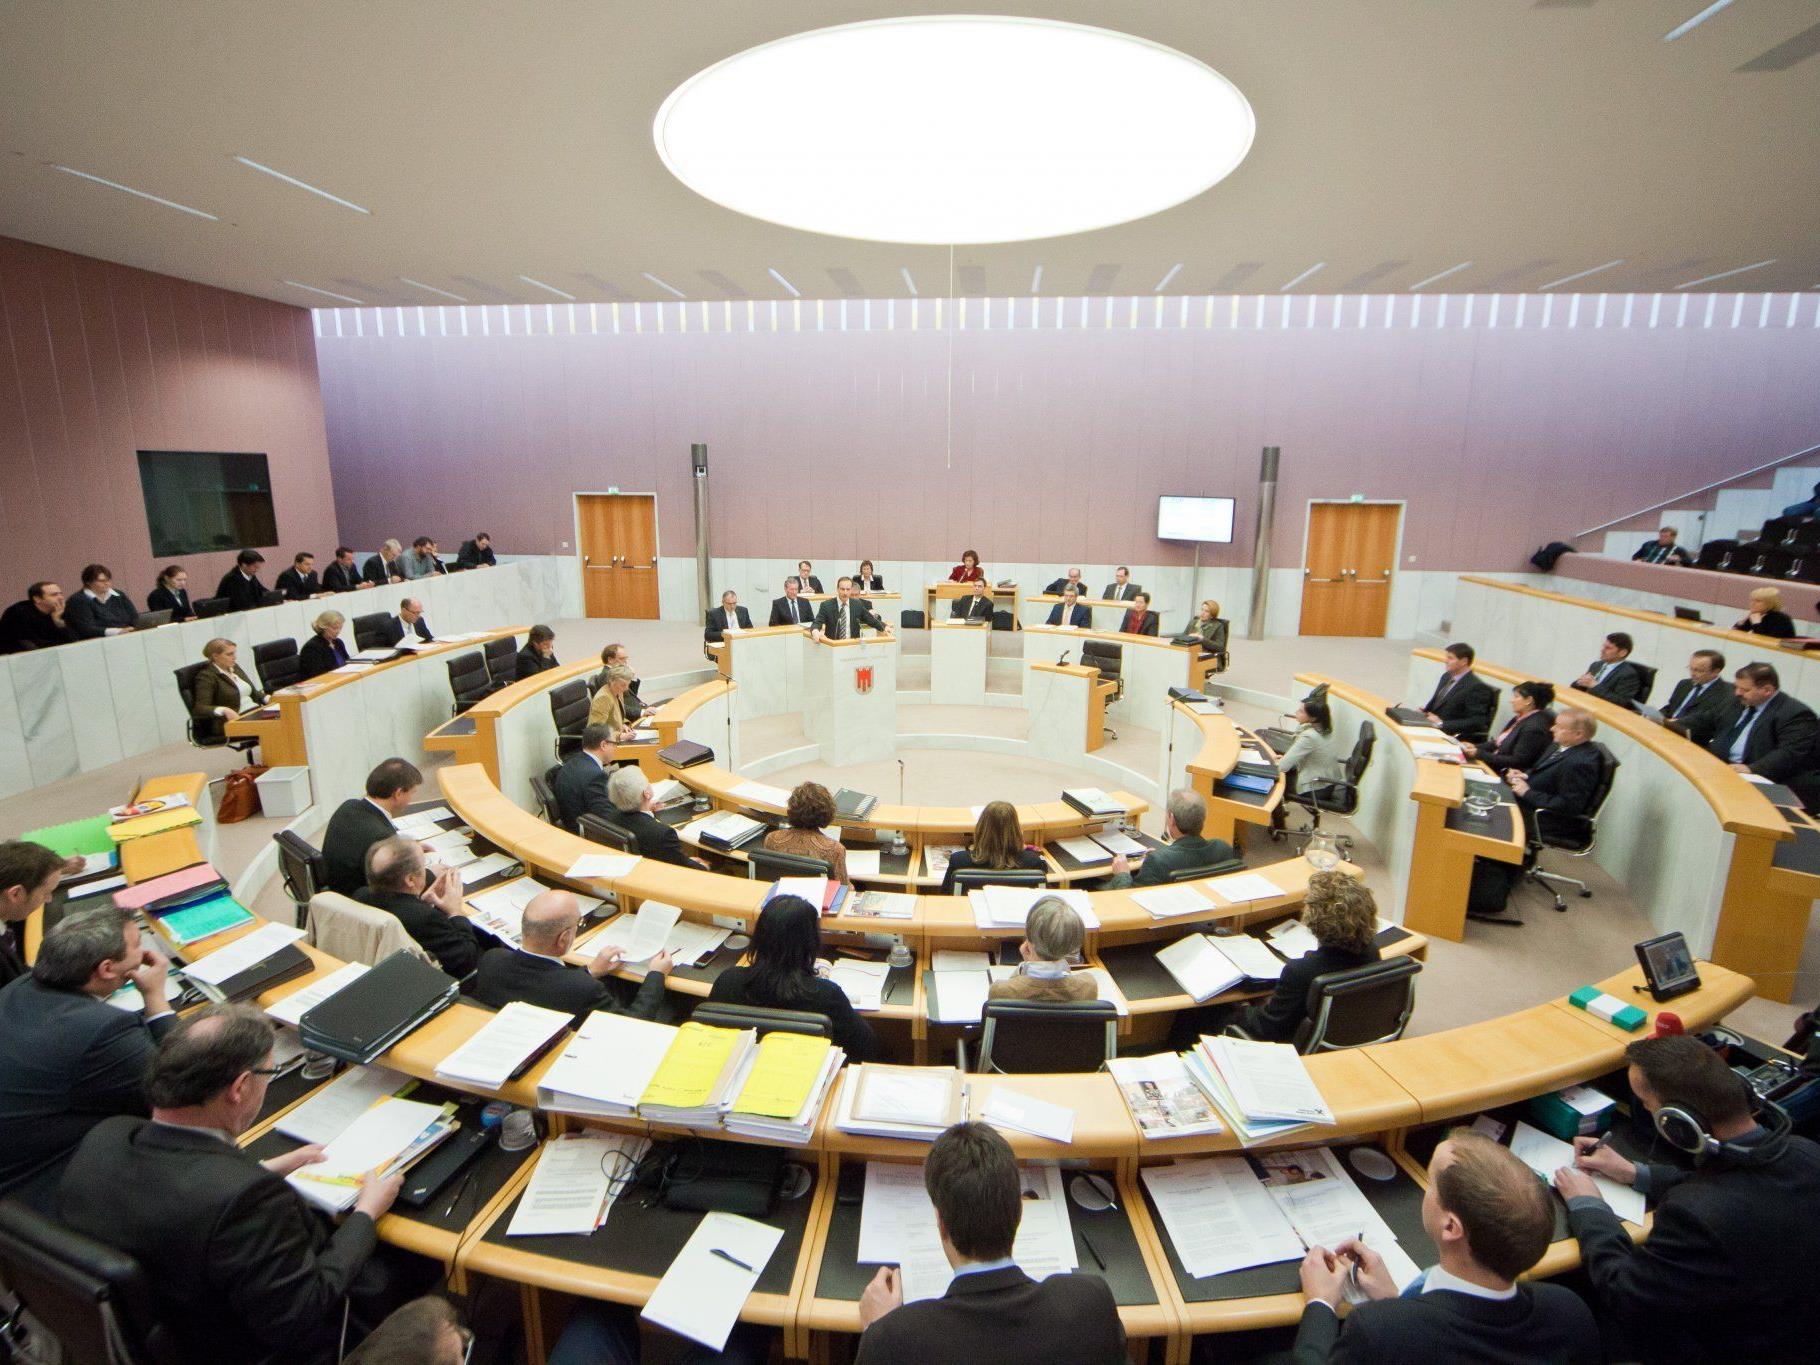 Sitzen bald weniger Abgeordnete im Landtag?